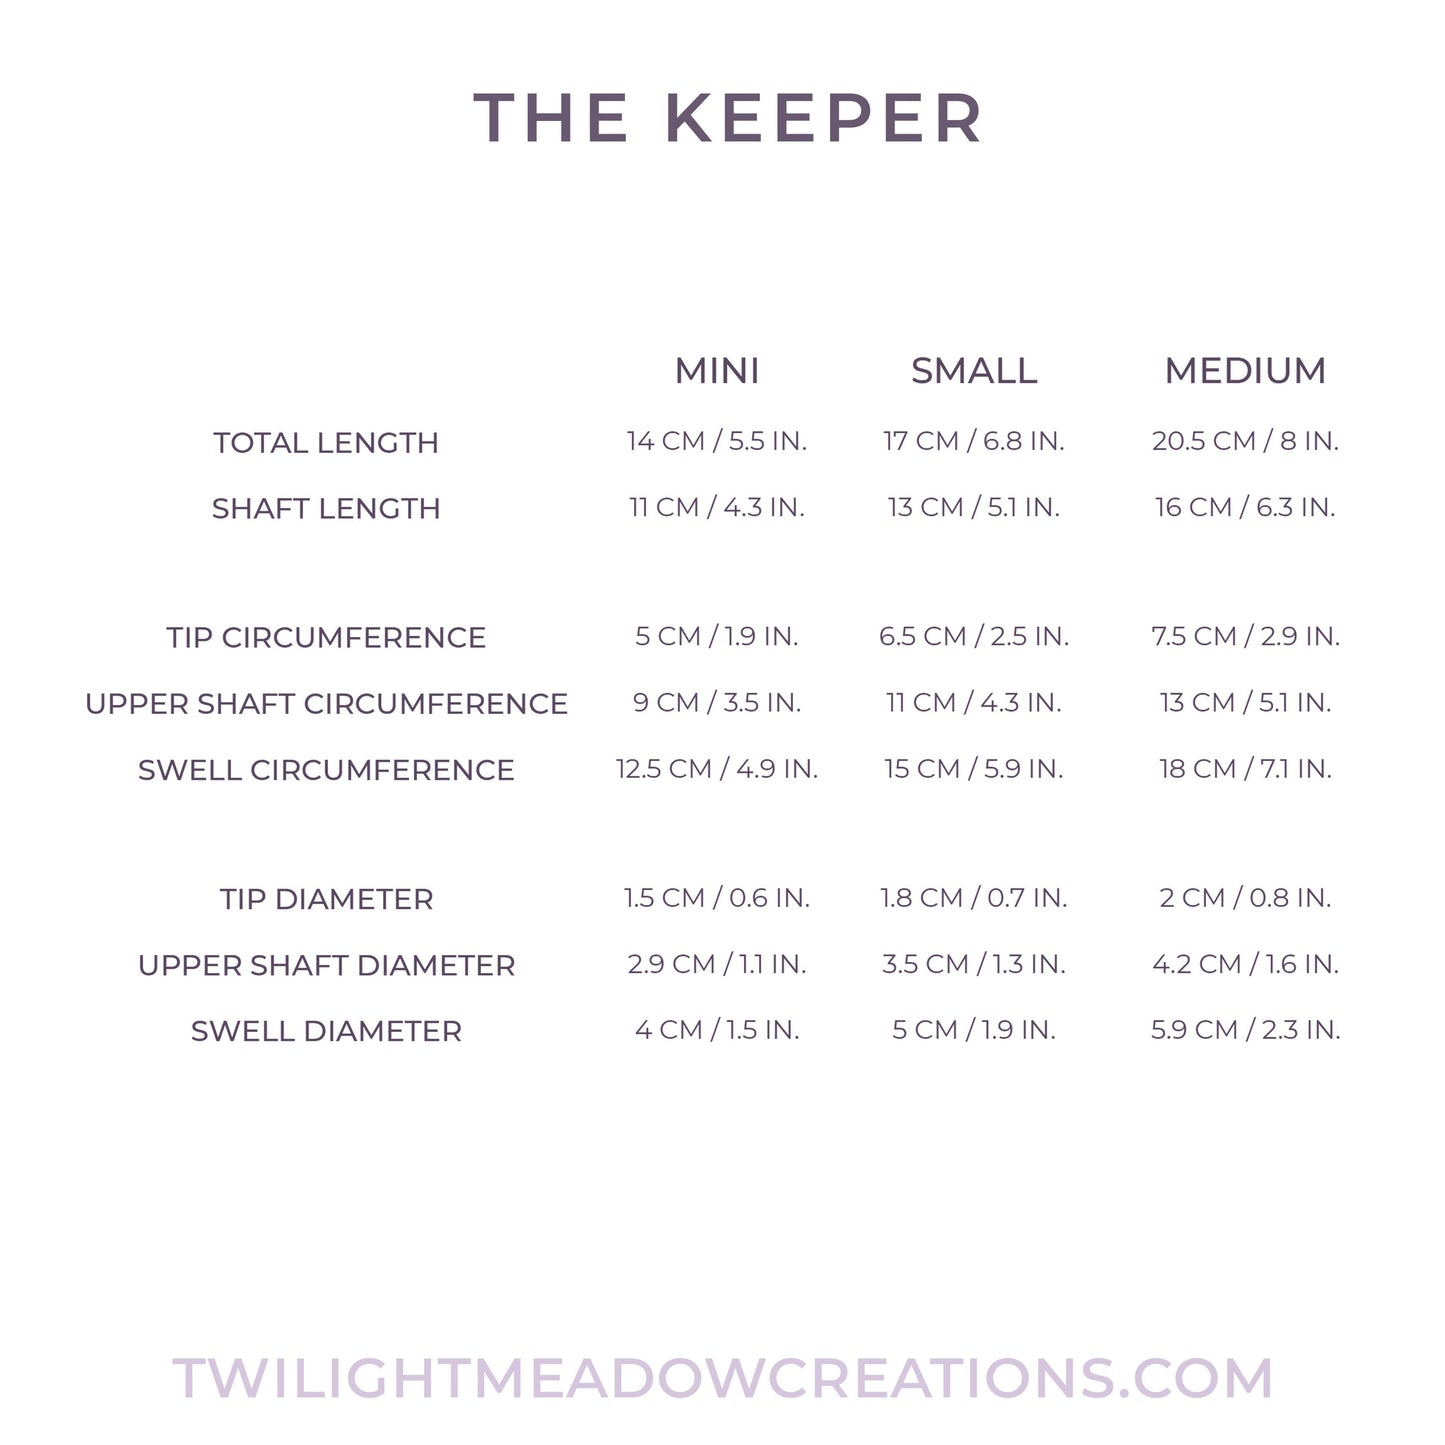 Mini Keeper (Firmness: Medium)